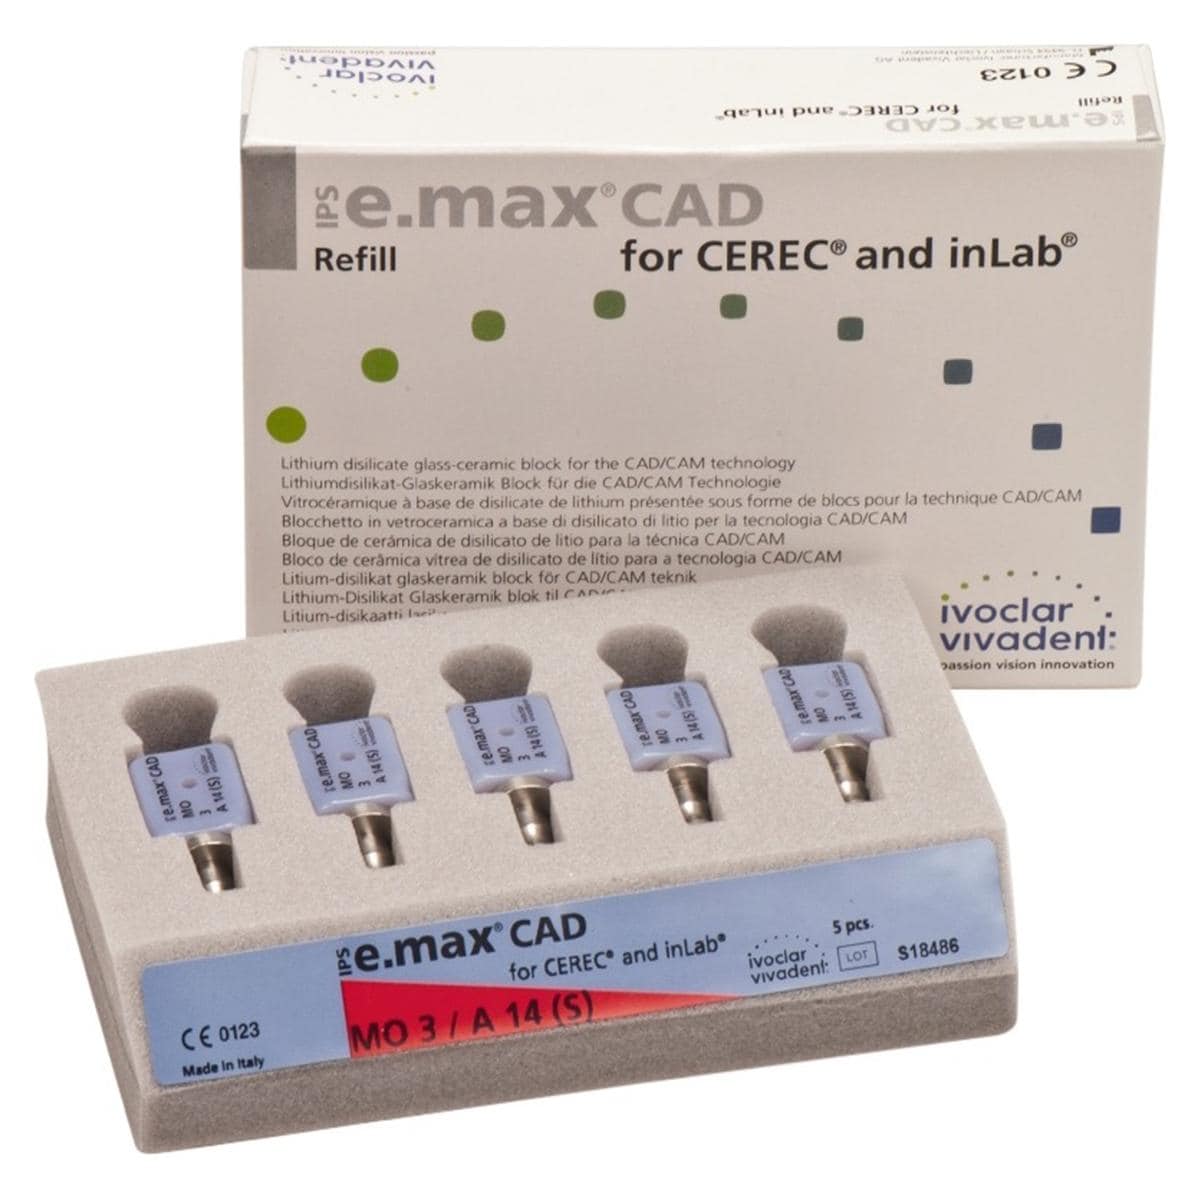 IPS e.max CAD pour Cerec et inlab - A 14 (S), 3